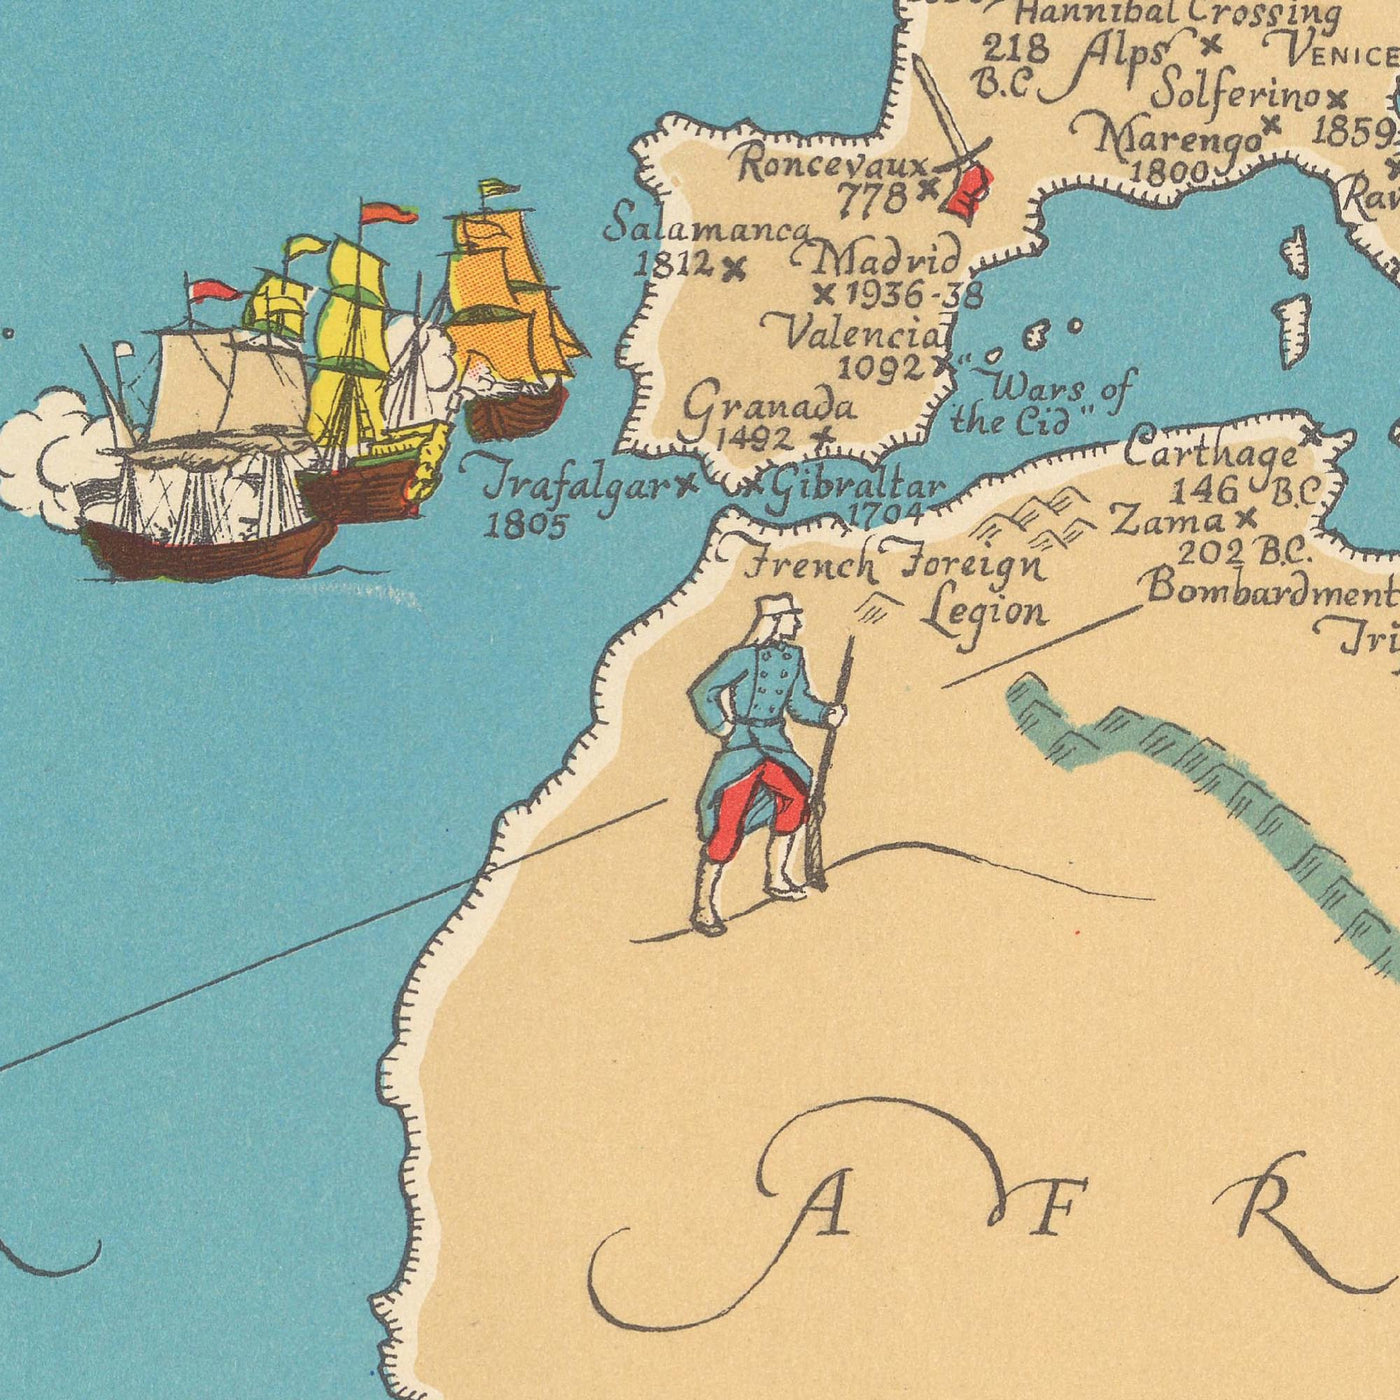 Geschichts- und Storykarte der Alten Welt von Kathleen Voute aus dem Jahr 1940 – Trojaner, Napoleon, die spanische Armada, Alexander der Große, das Römische Reich